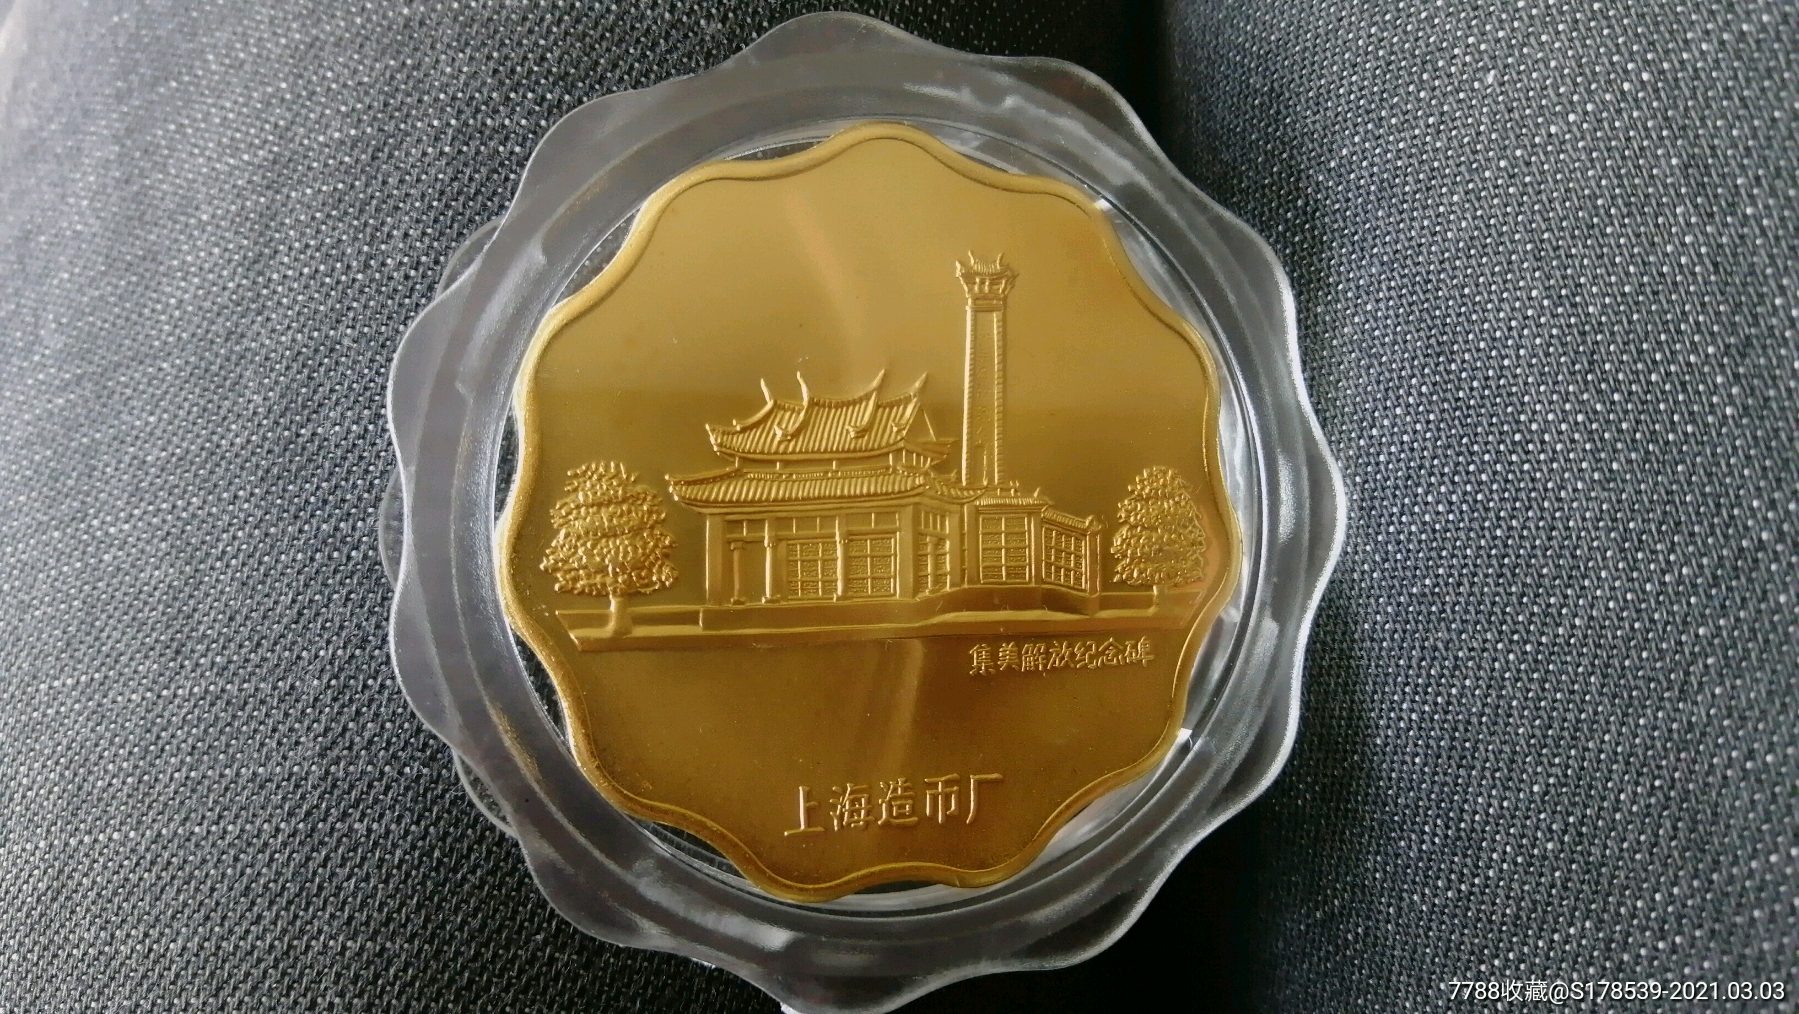 上海造币厂铸1994年陈嘉庚诞辰120周年铜质镀金纪念章